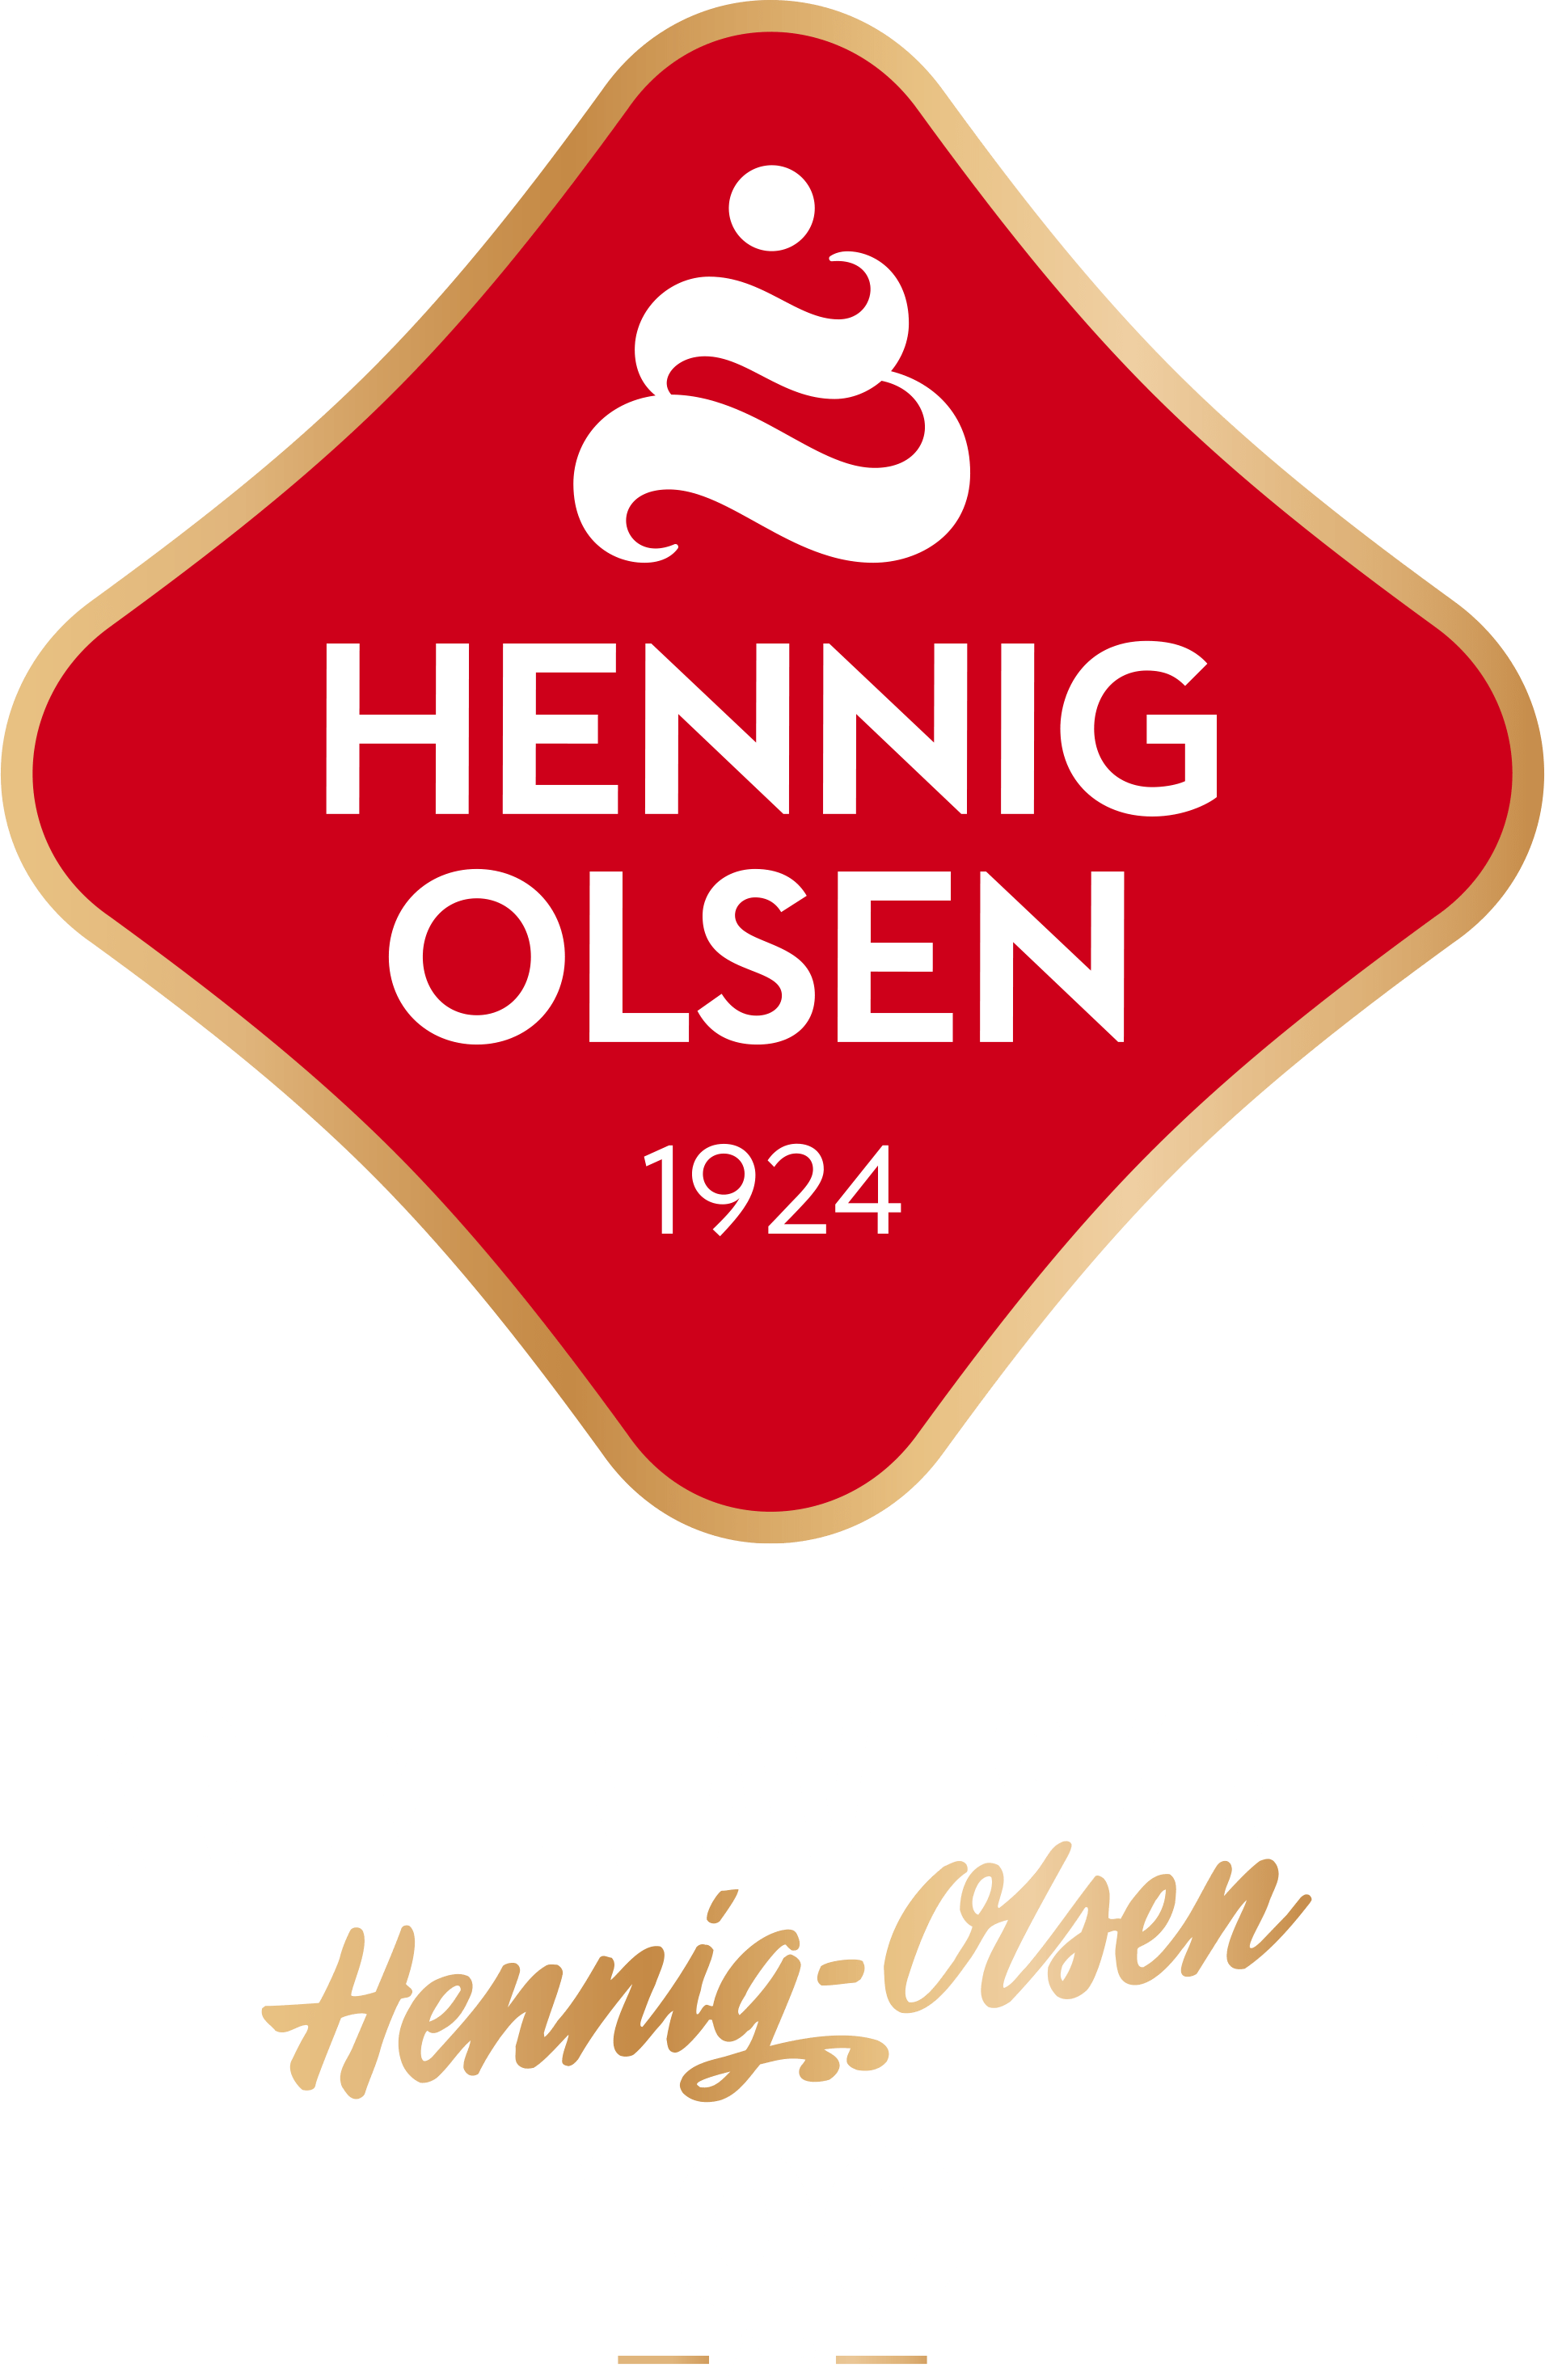 Hennig-Olsen Is – Kremen av Iskrem